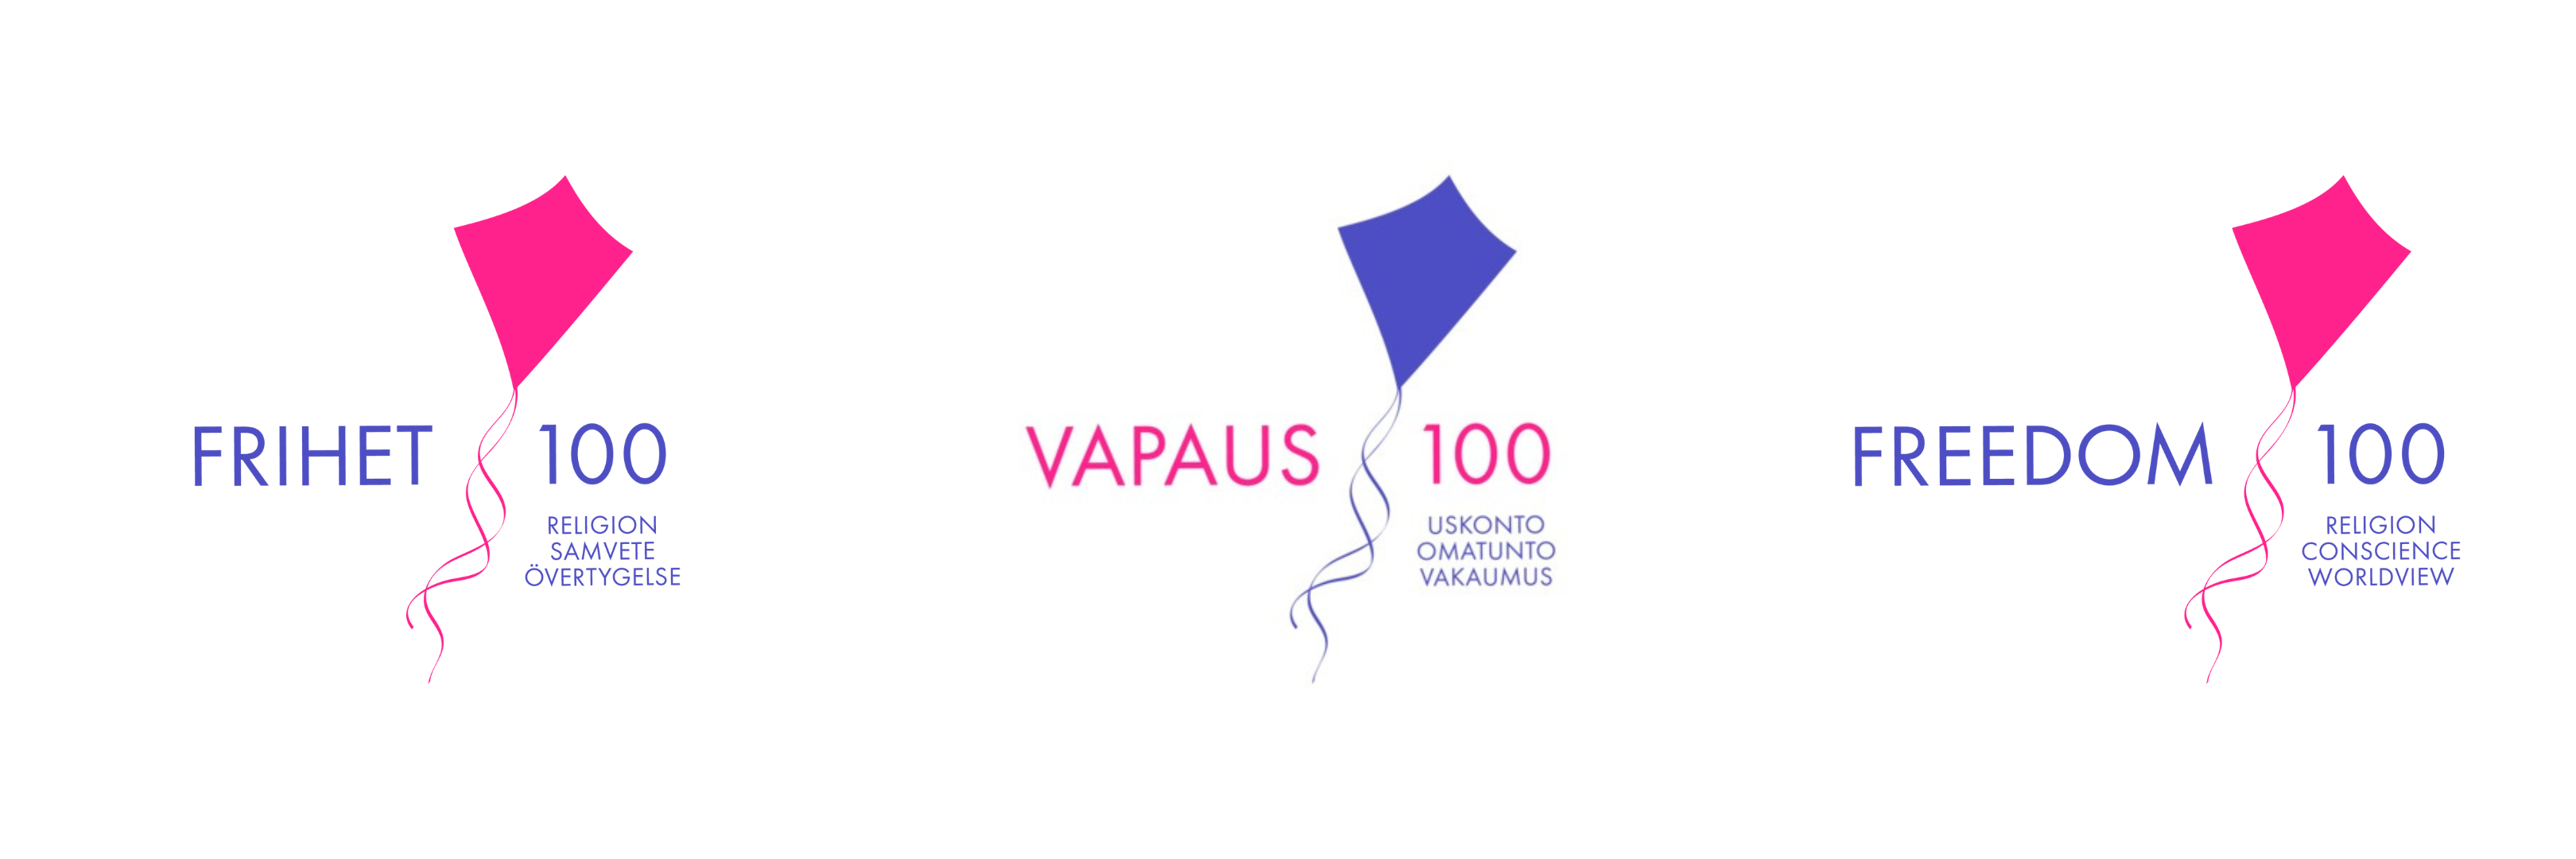 Jubileumsårets logo med drakar i rosa och lila, texten Frihet 100, Vapaus 100, Freedom 100.